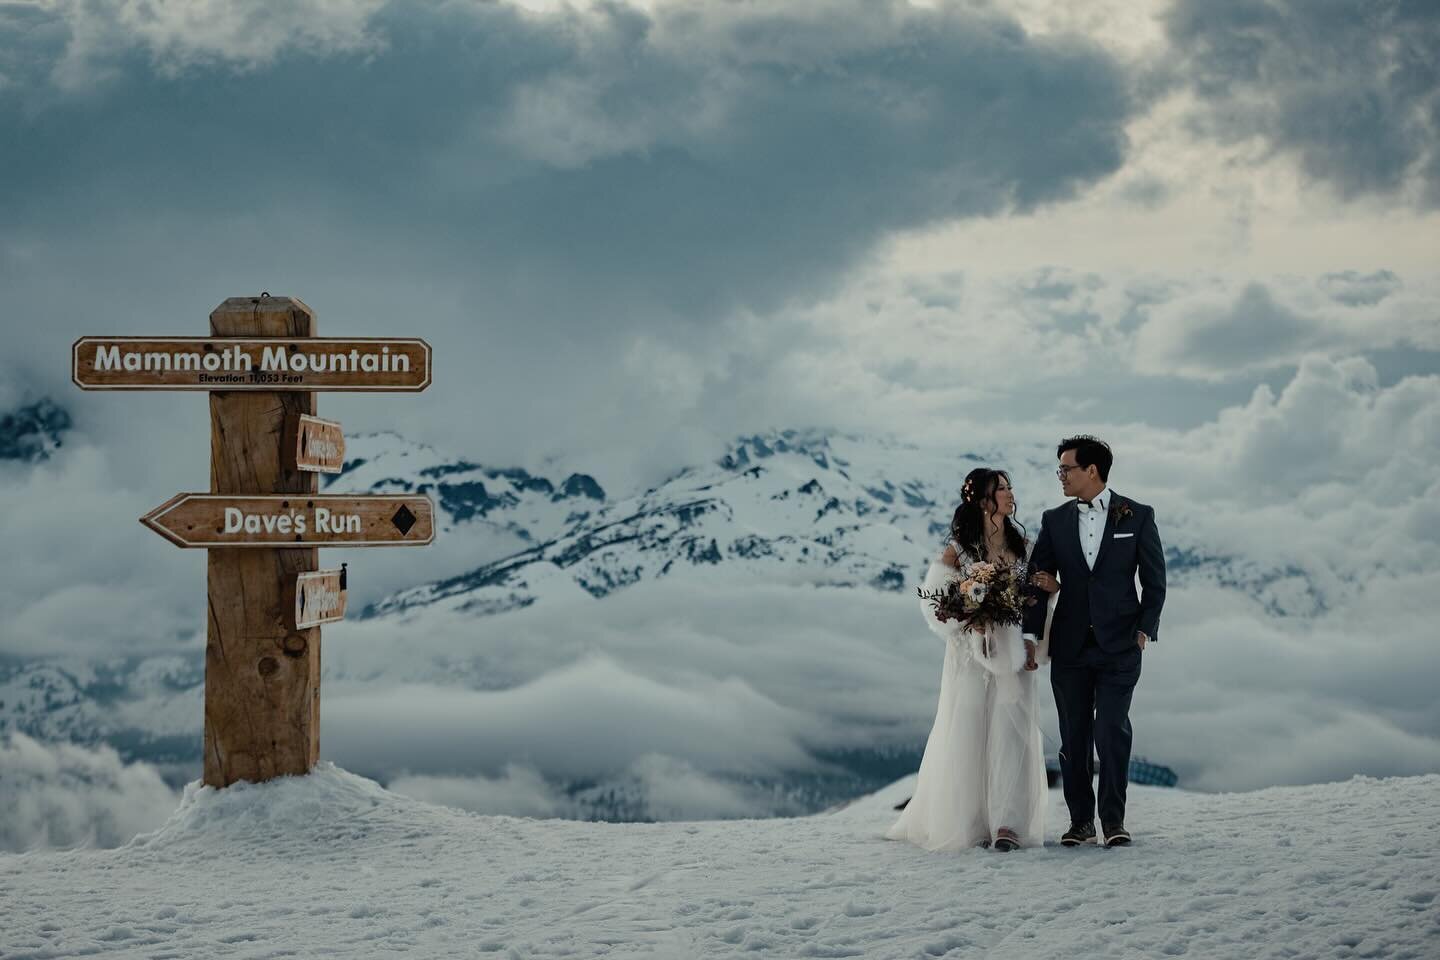 Winter Wedding Wonder. 📸 @minaretphoto